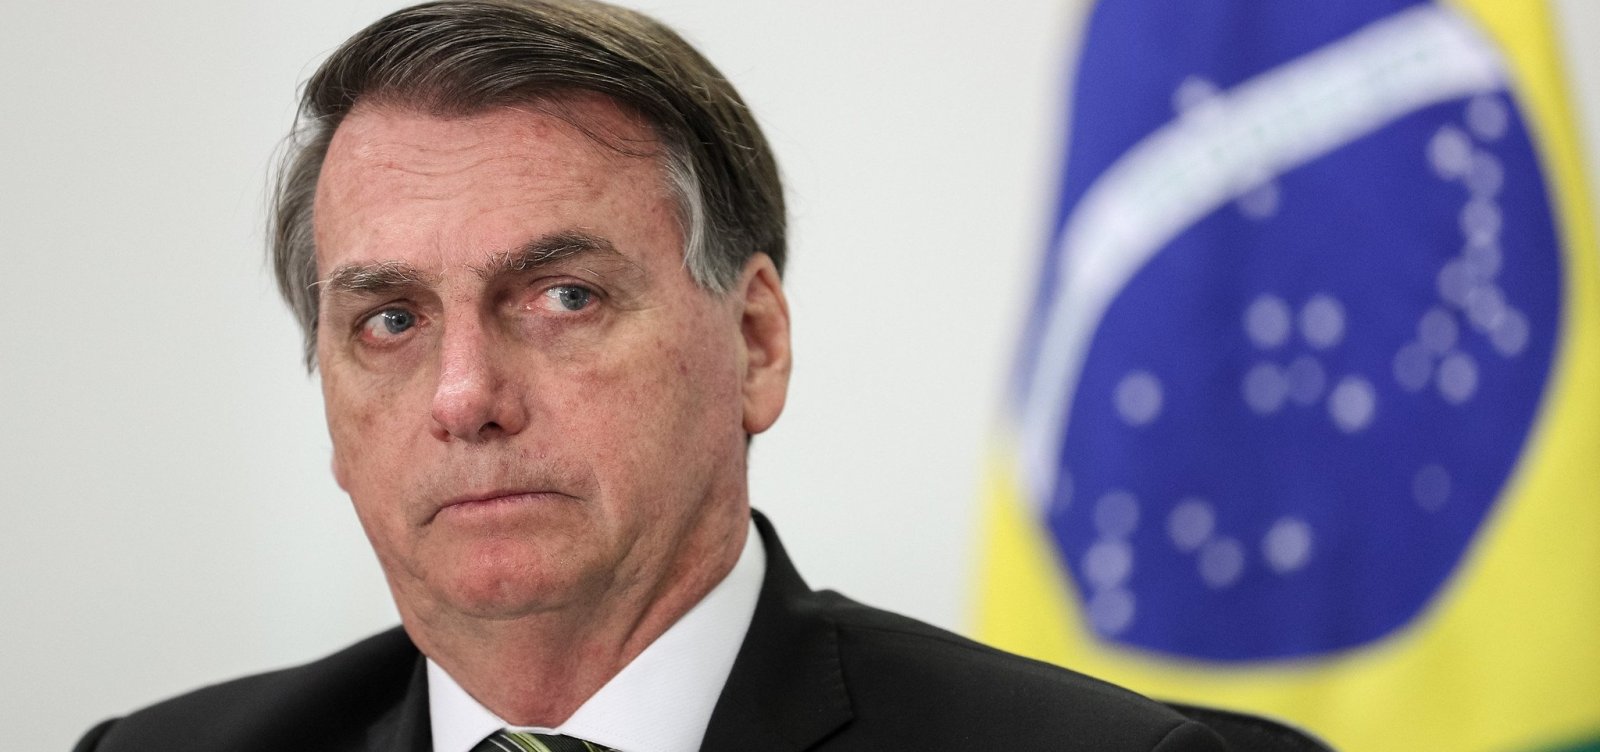 Com suspeita de Covid-19, Bolsonaro cancela agenda na Bahia, mas ministro deve comparecer